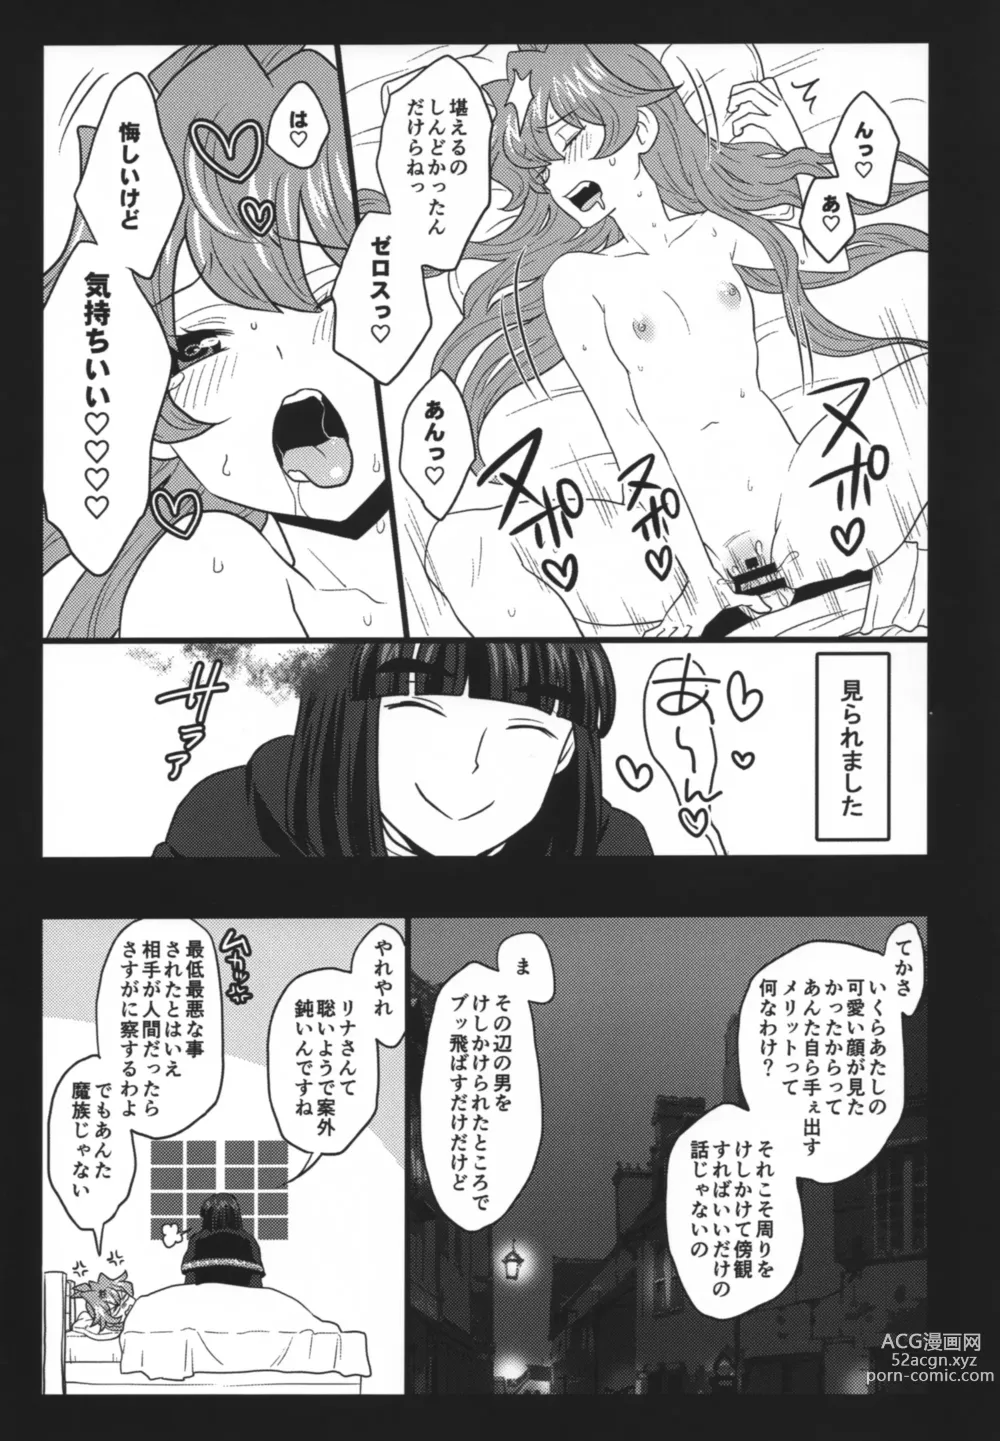 Page 72 of doujinshi Choro Sugi Desu Yo, Lina-san.